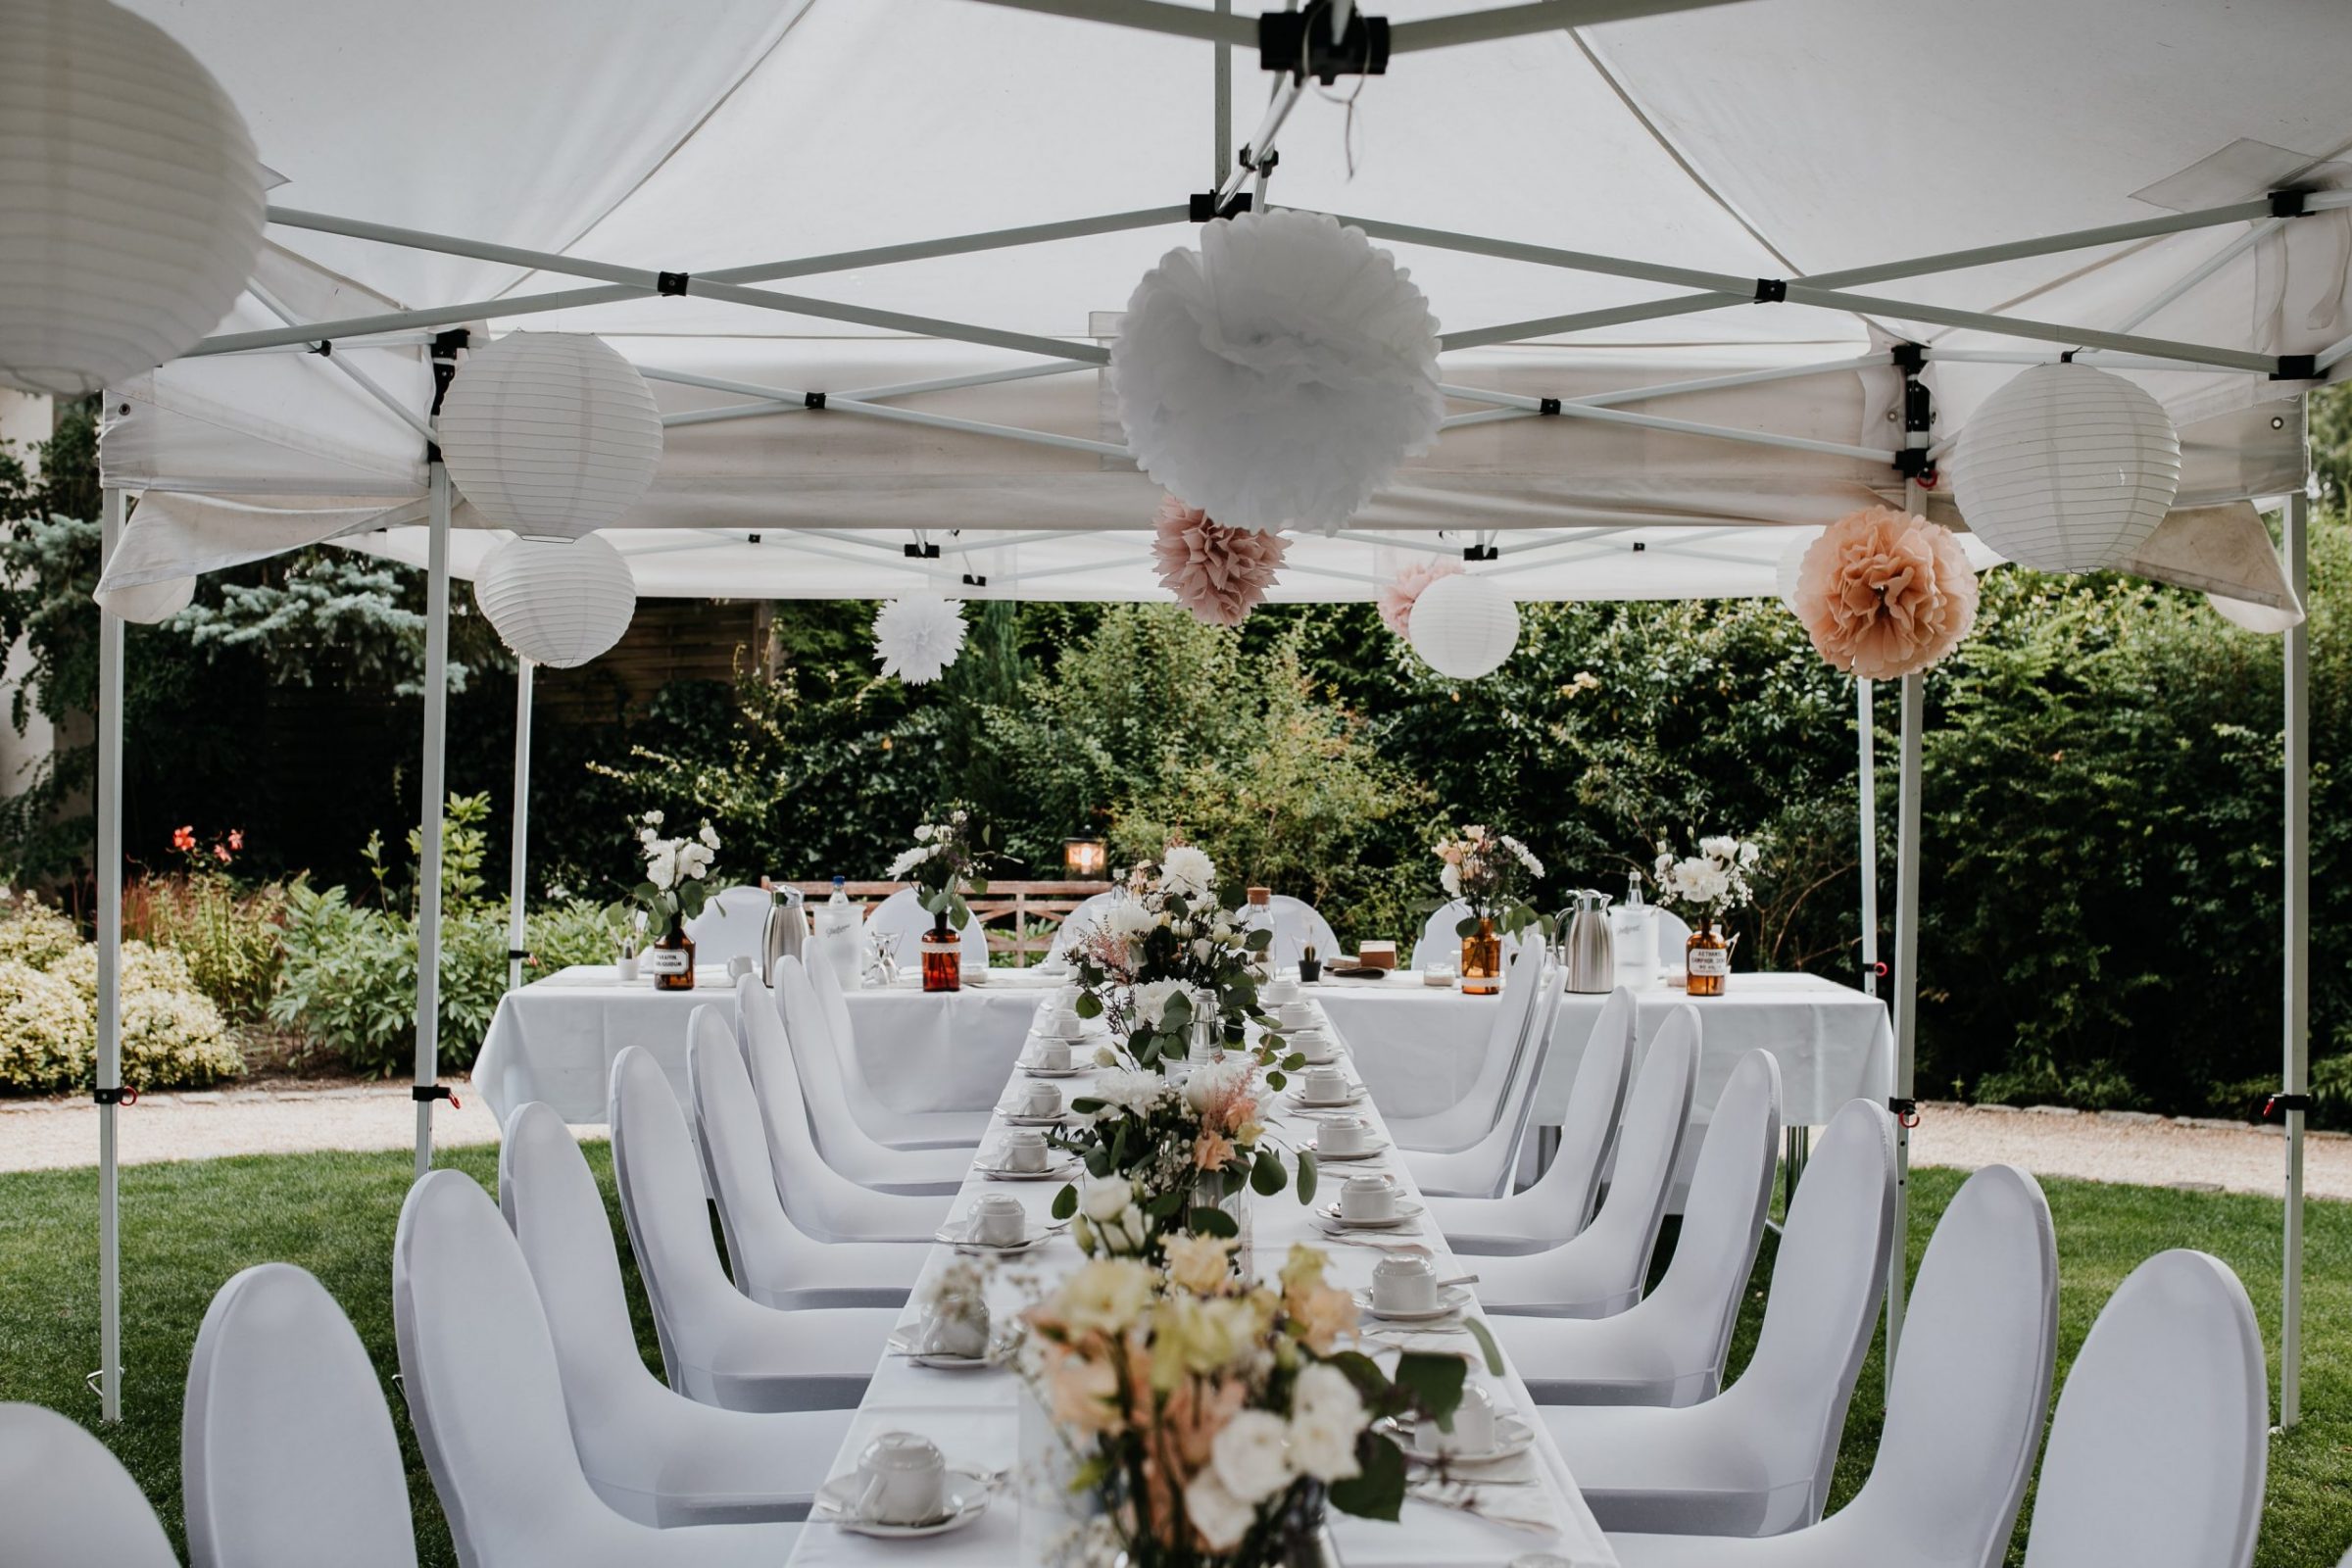 wedding guests, laughter, laughing, table decor, garden wedding, garden tent, hochzeitsgäste, zelt, table decor, table decoration